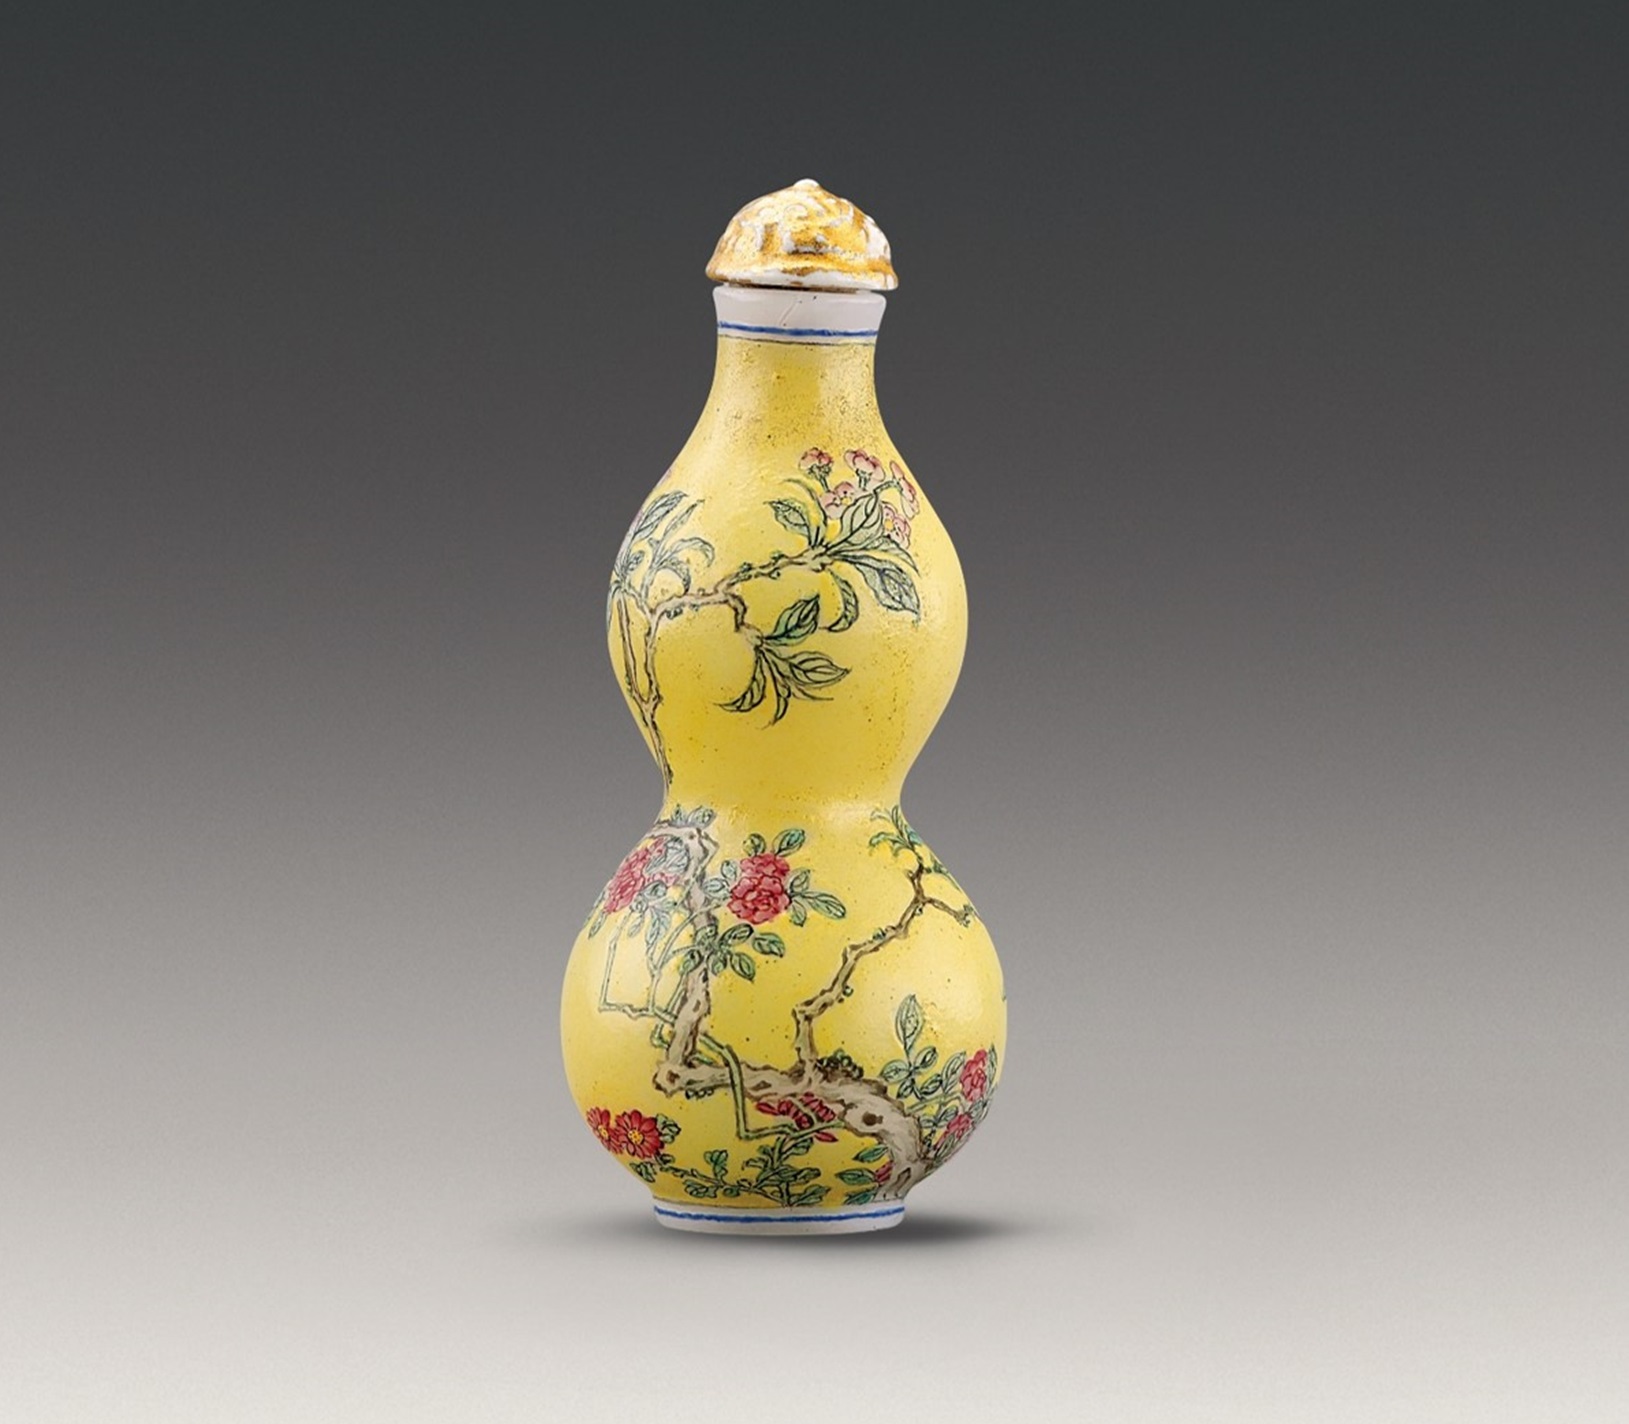 玻璃胎畫琺瑯黃地花卉圖葫蘆形鼻煙壺